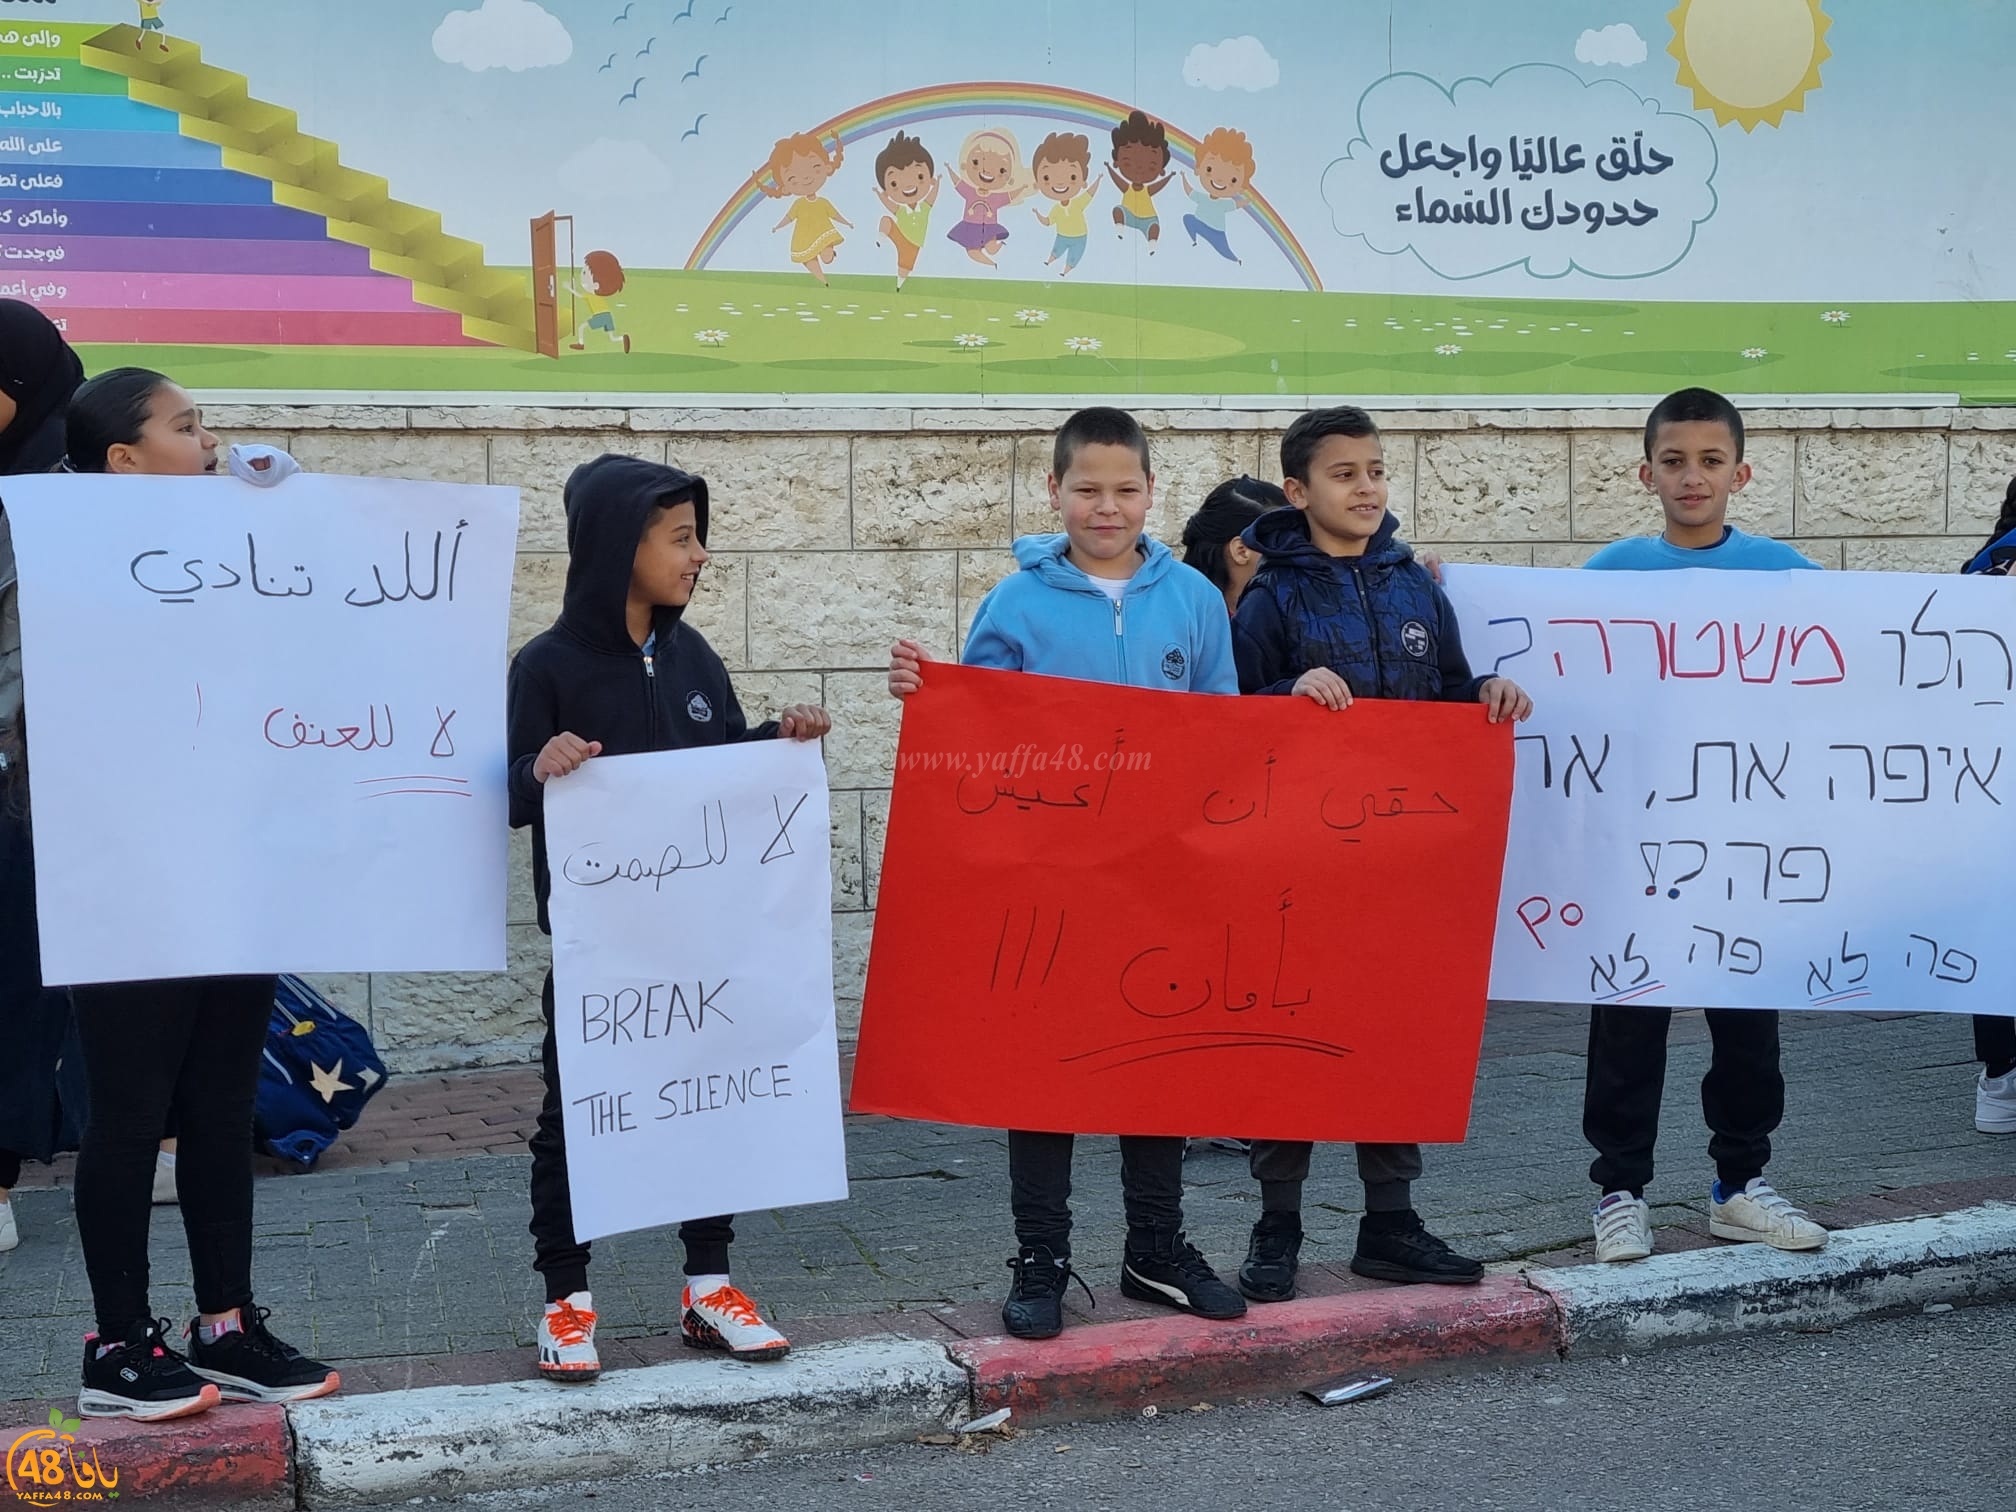  اللد: طلاب الراشدية يتظاهرون ضد اطلاق النار على مدير المدرسة